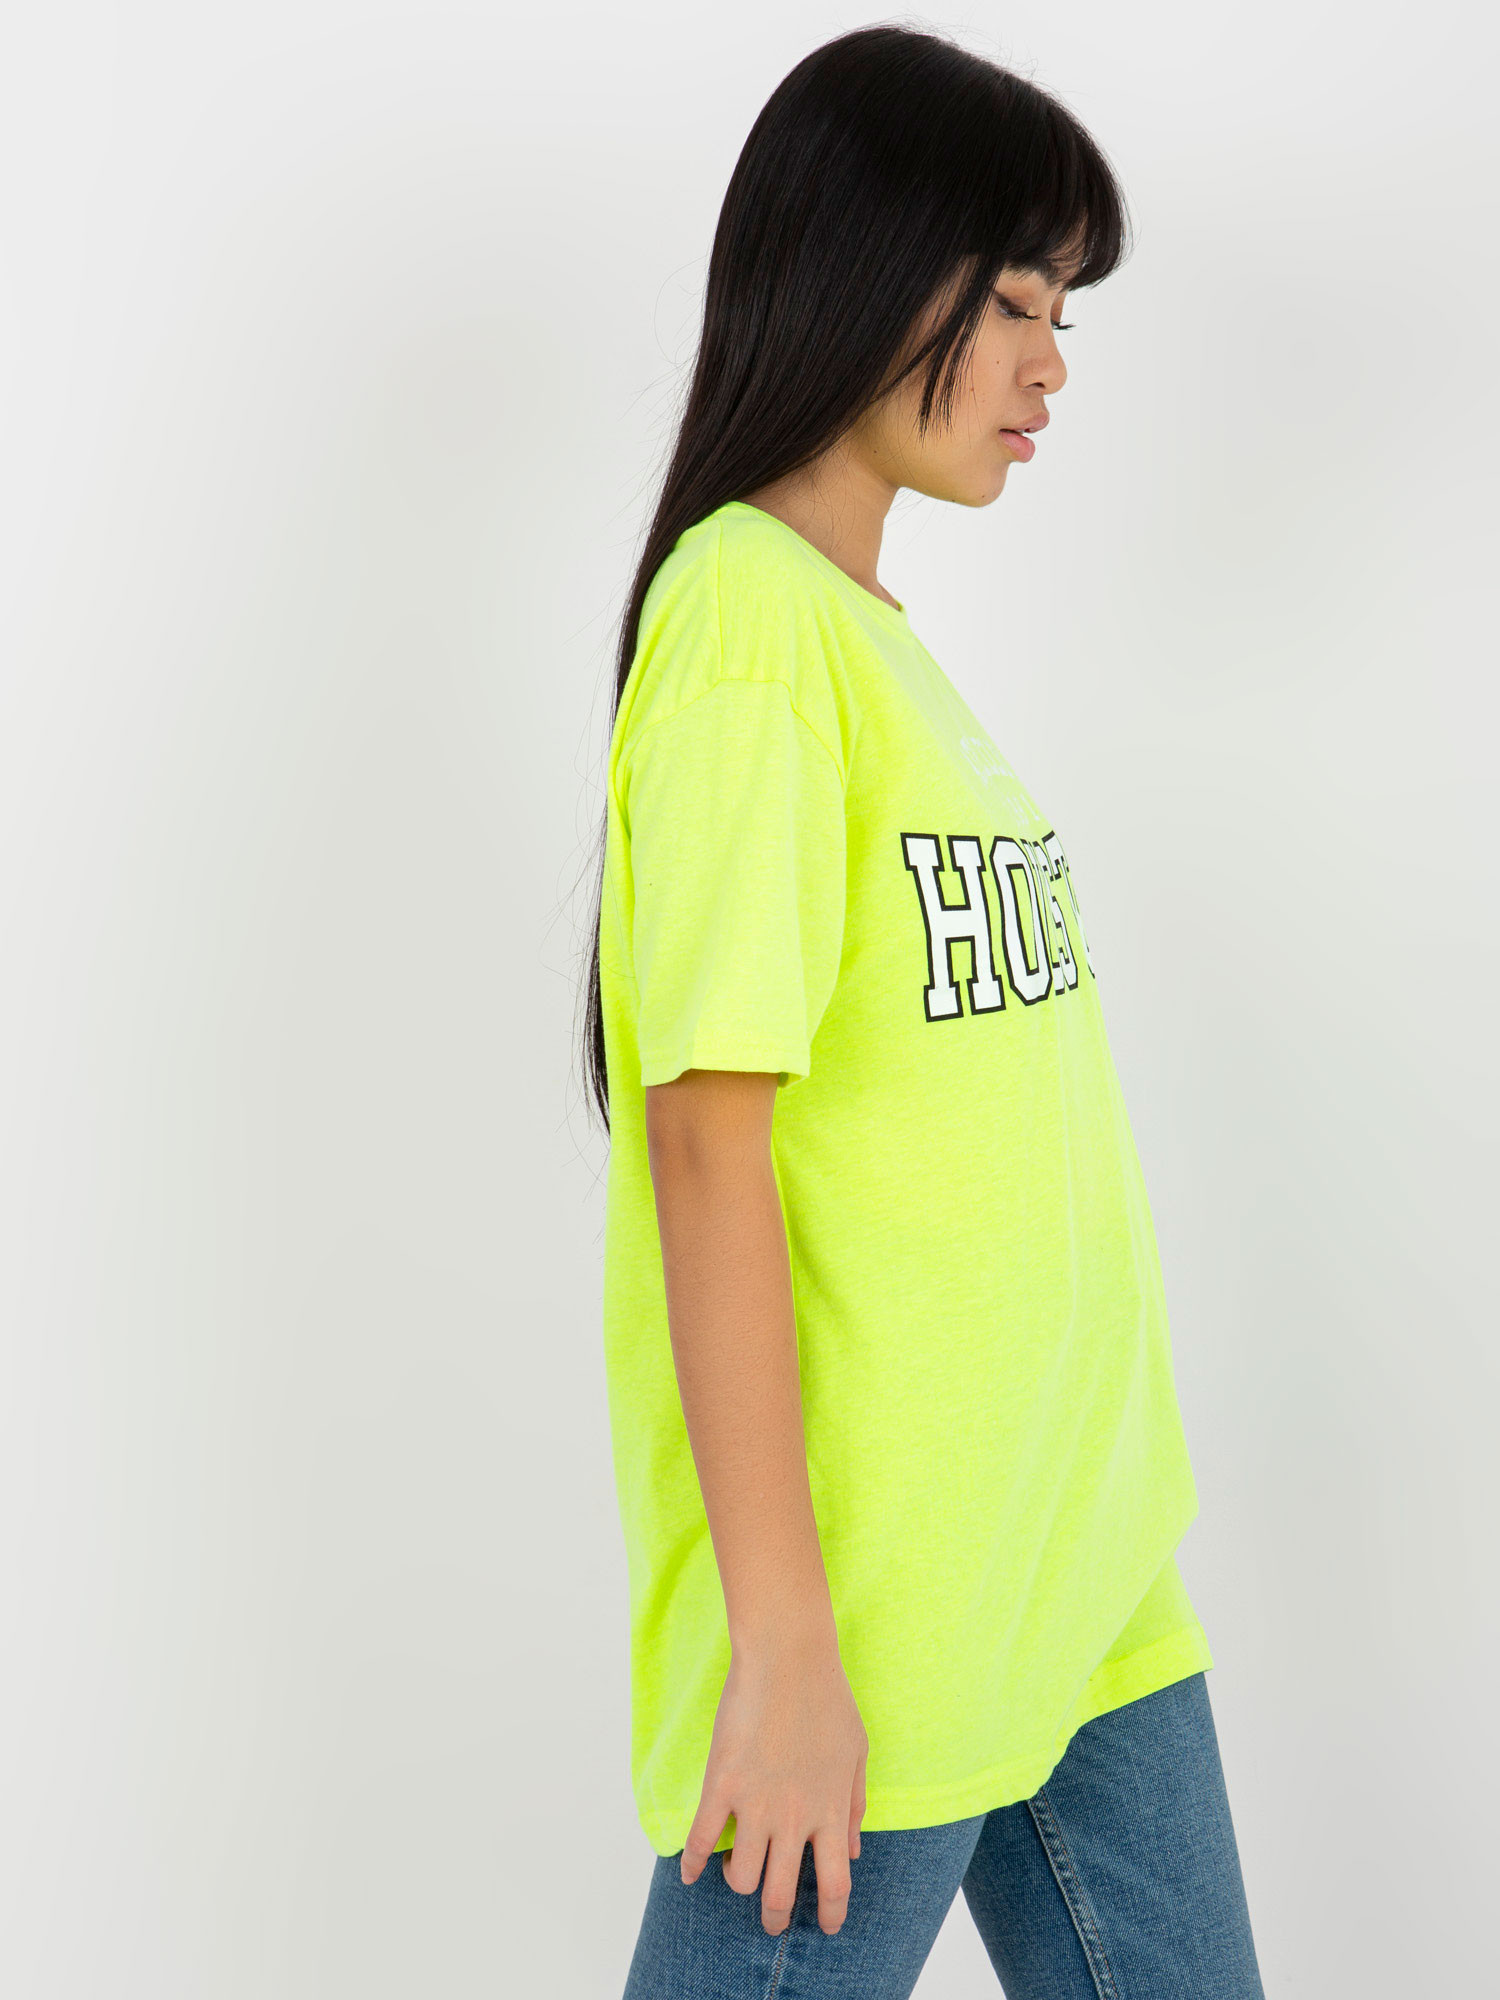 Dámské tričko EM TS 527 1.26X fluo žlutá - FPrice jedna velikost